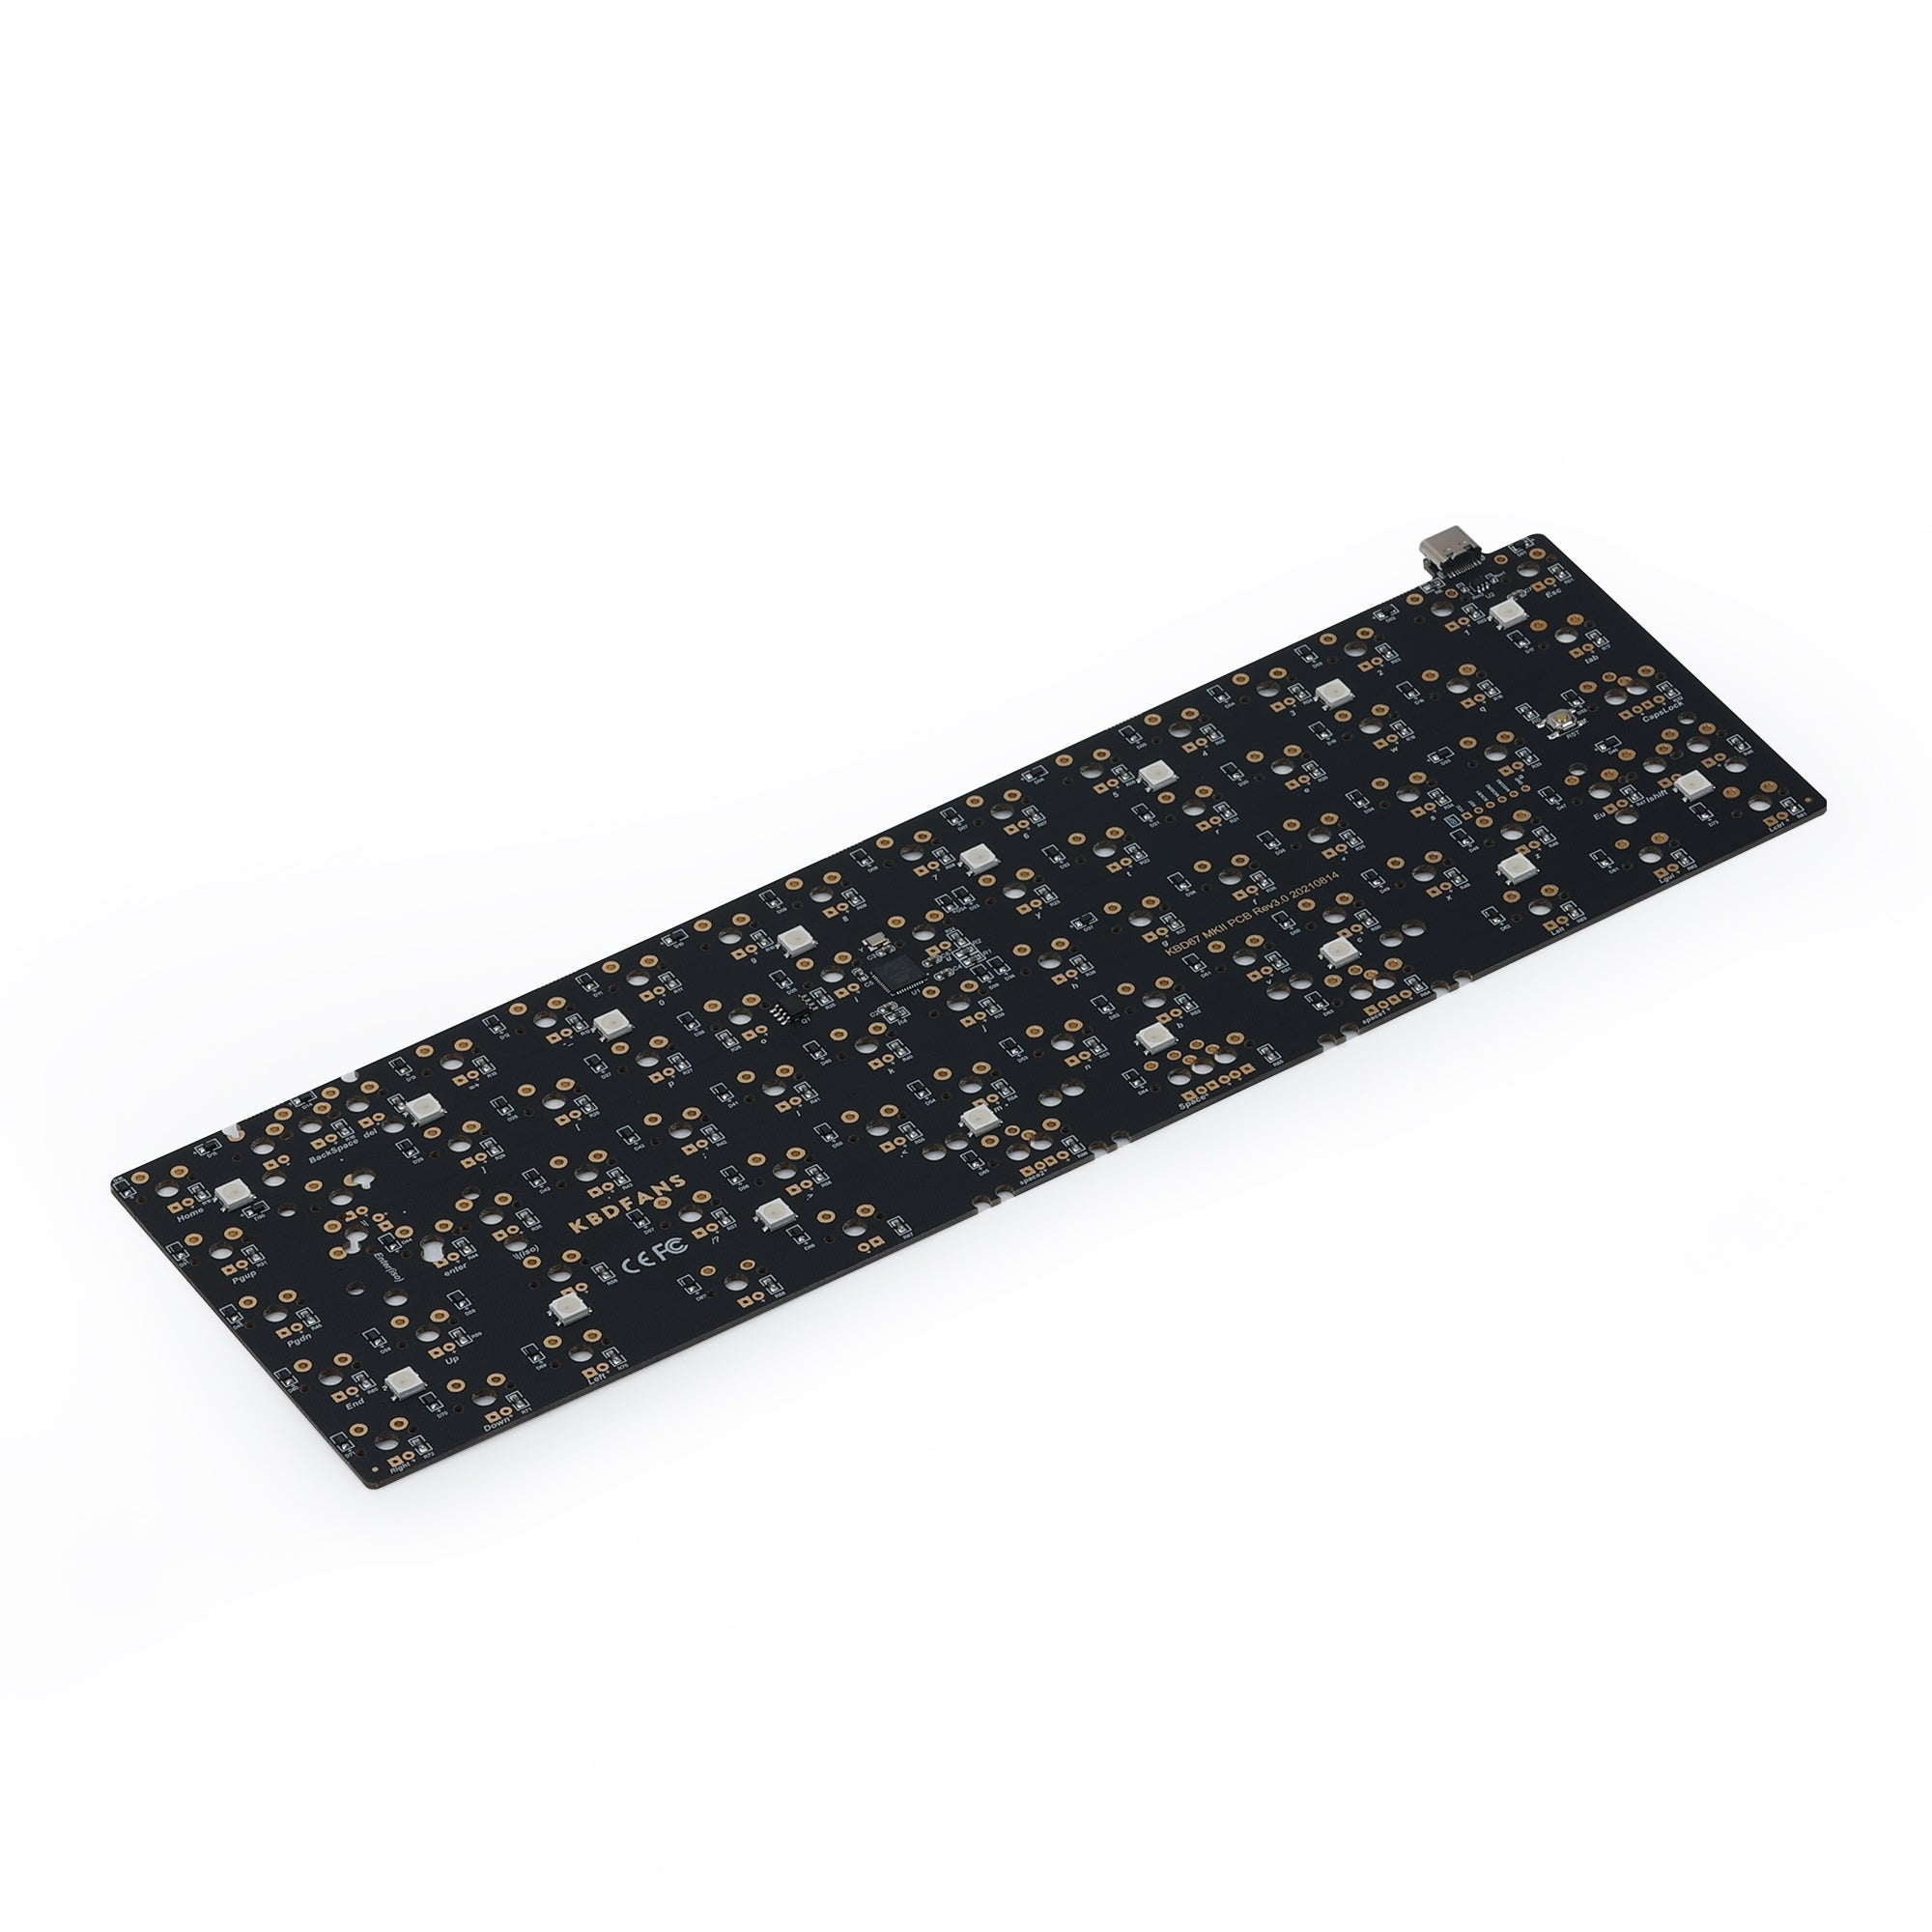 KBD67 MarK II V3 Solderable PCB – KBDfans® Mechanical Keyboards Store